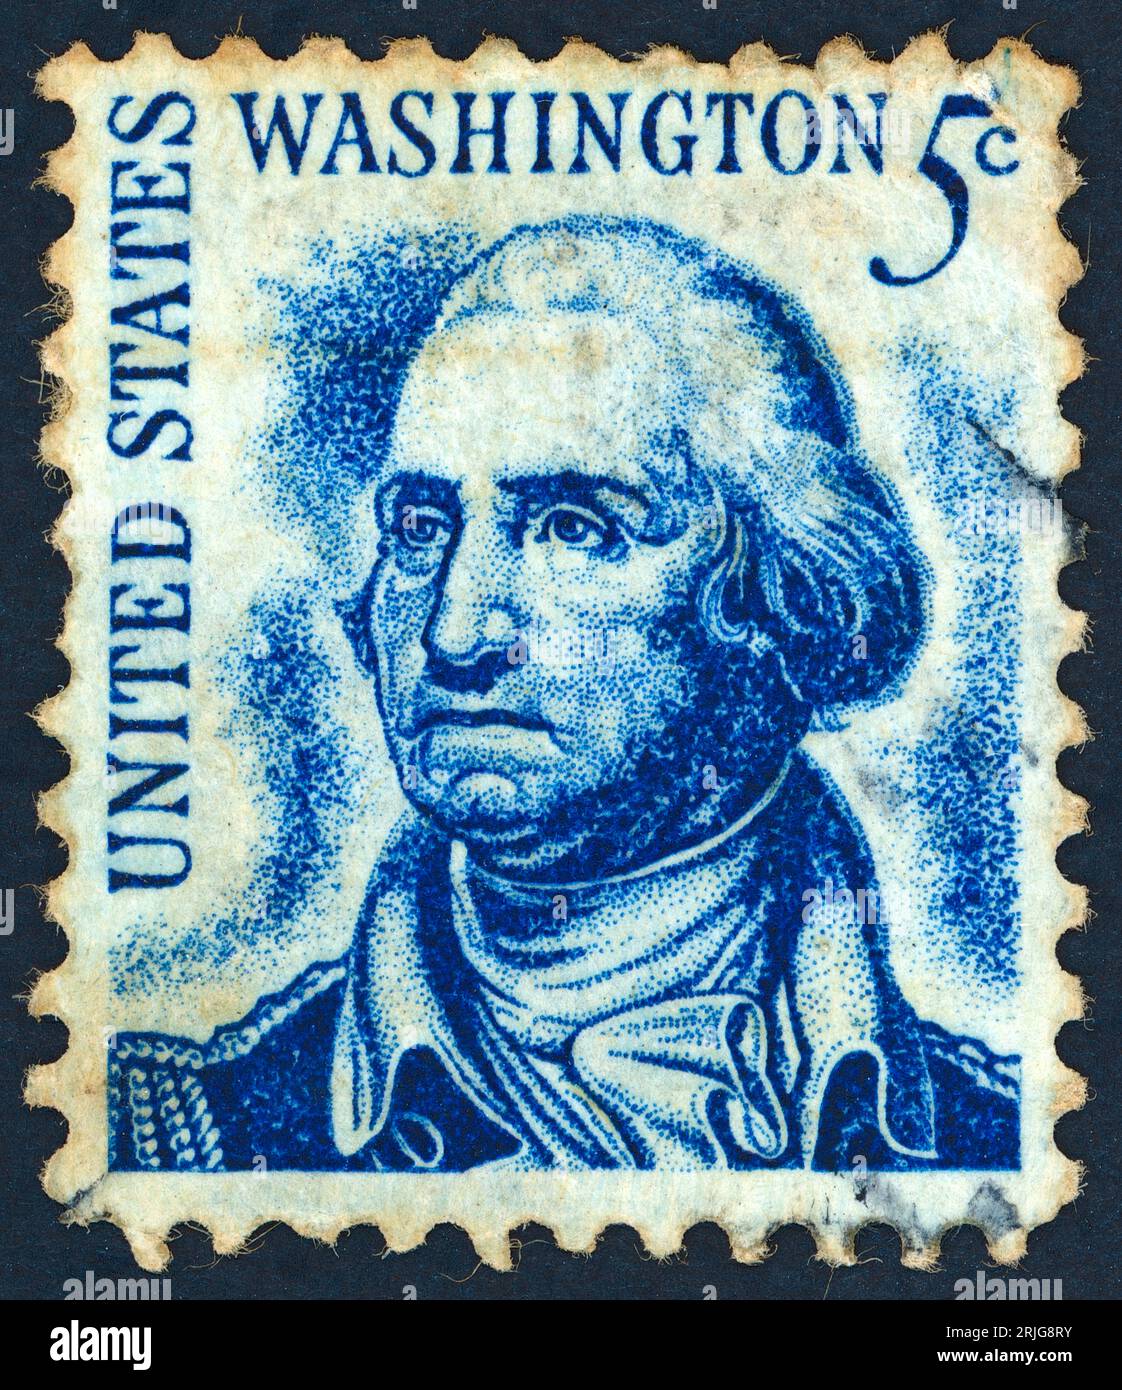 George Washington (1732 – 1799). Francobollo emesso negli Stati Uniti nel 1966. George Washington, chiamato anche padre del suo Paese, fu un generale e comandante in capo degli eserciti coloniali durante la Rivoluzione americana (1775-83) e successivamente primo presidente degli Stati Uniti (1789-97). Foto Stock